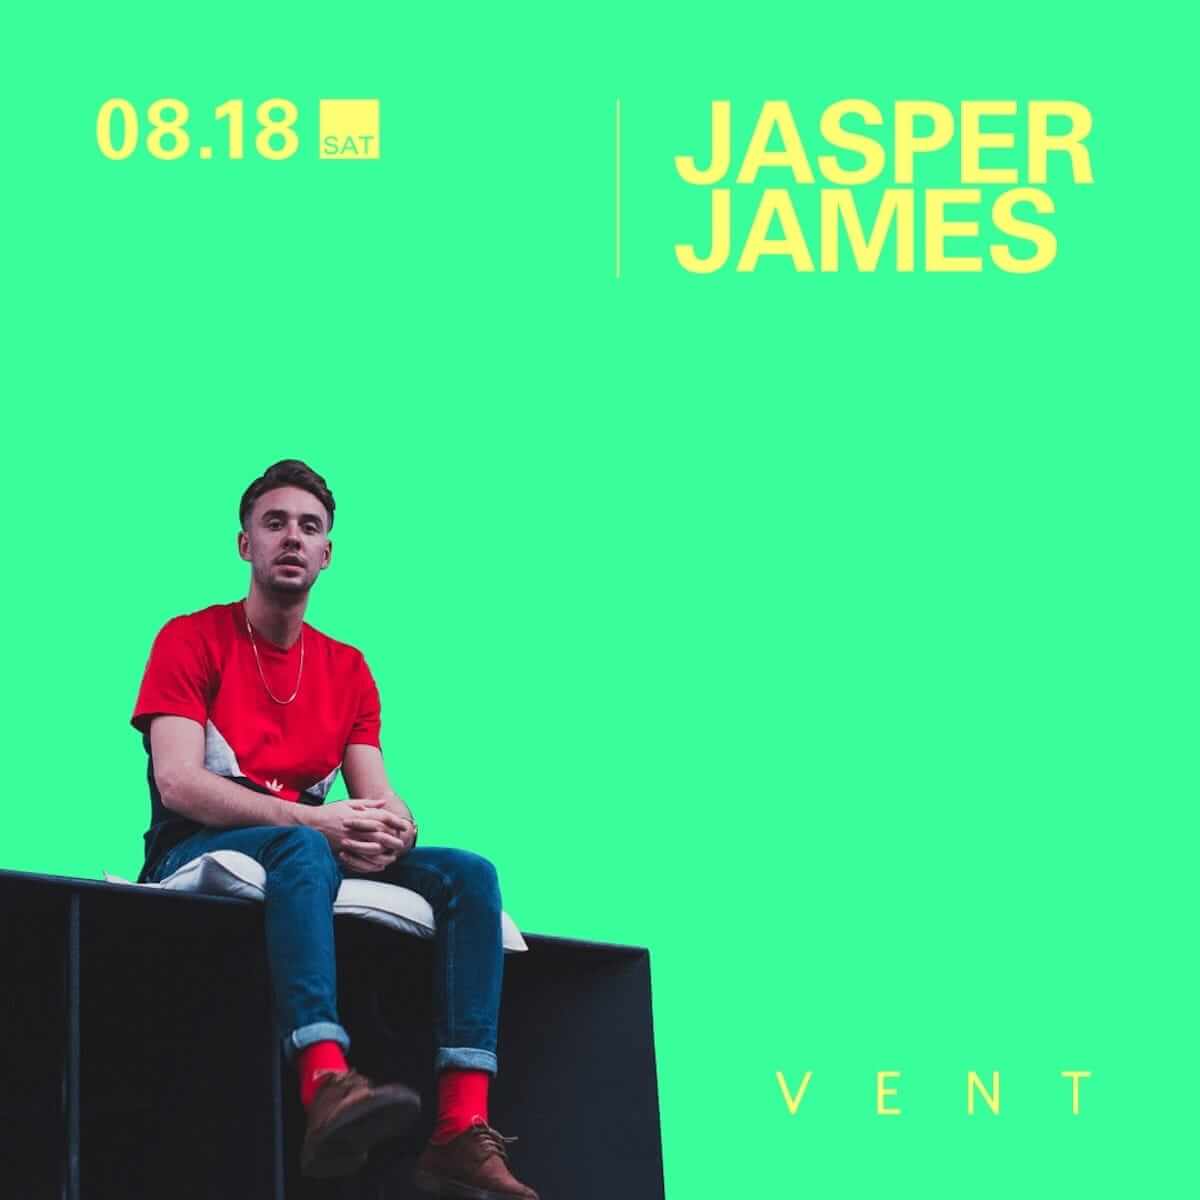 Jasper James